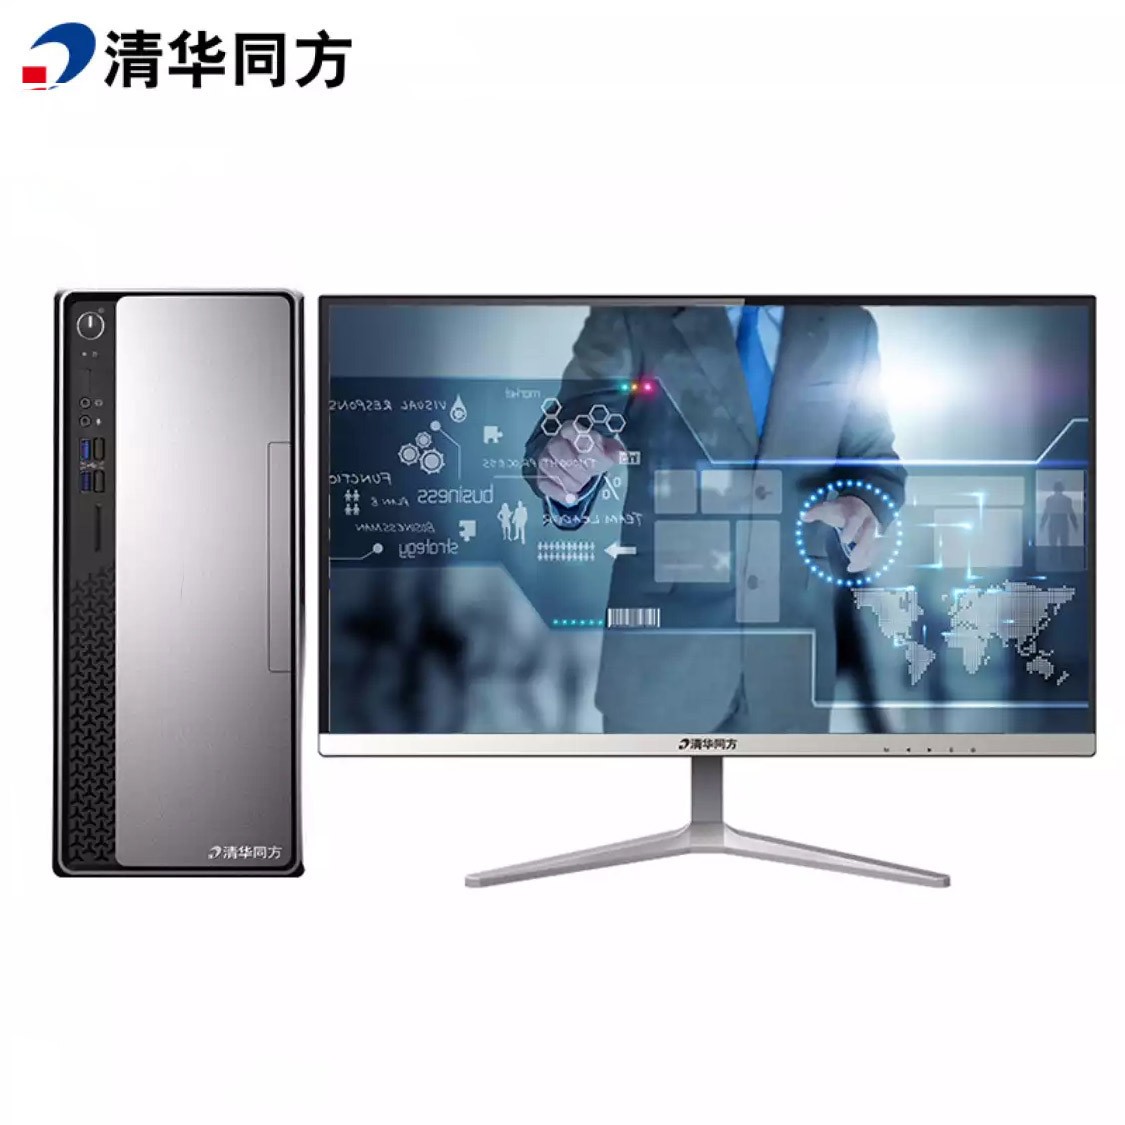 清华同方 超越E500-72450 19.5寸显示屏台式电脑